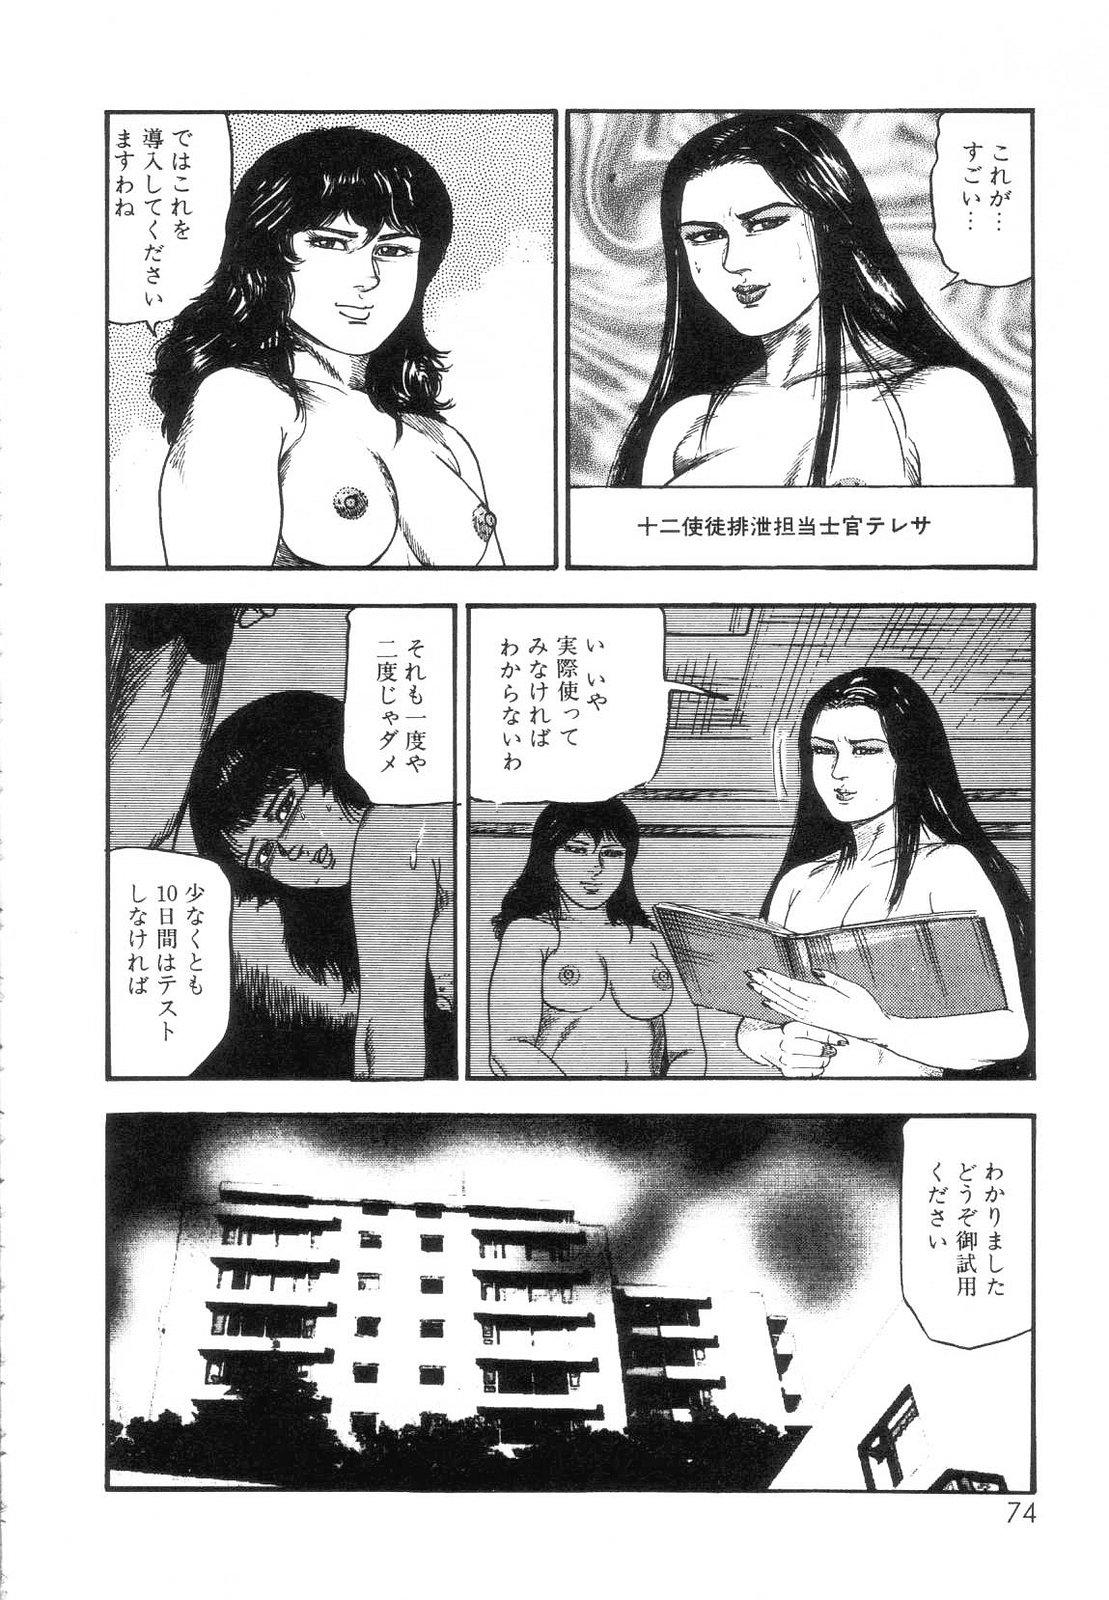 Shiro no Mokushiroku Vol. 7 - Shiiku Ningyou Erika no Shou 75